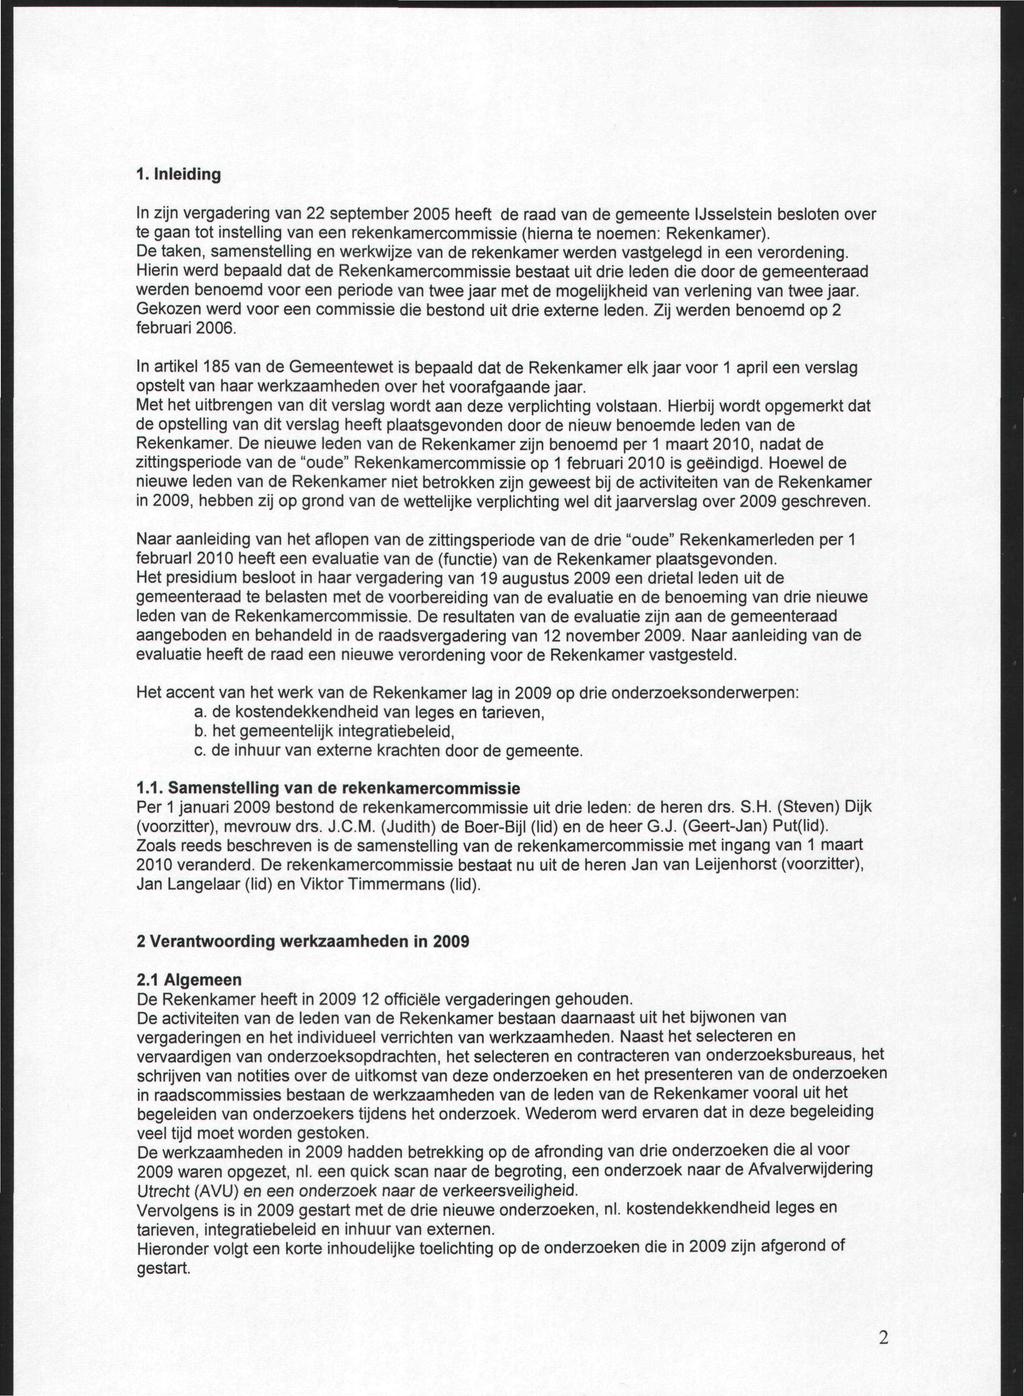 1. Inleiding In zijn vergadering van 22 september 2005 heeft de raad van de gemeente IJsselstein besloten over te gaan tot instelling van een rekenkamercommissie (hierna te noemen: Rekenkamer).